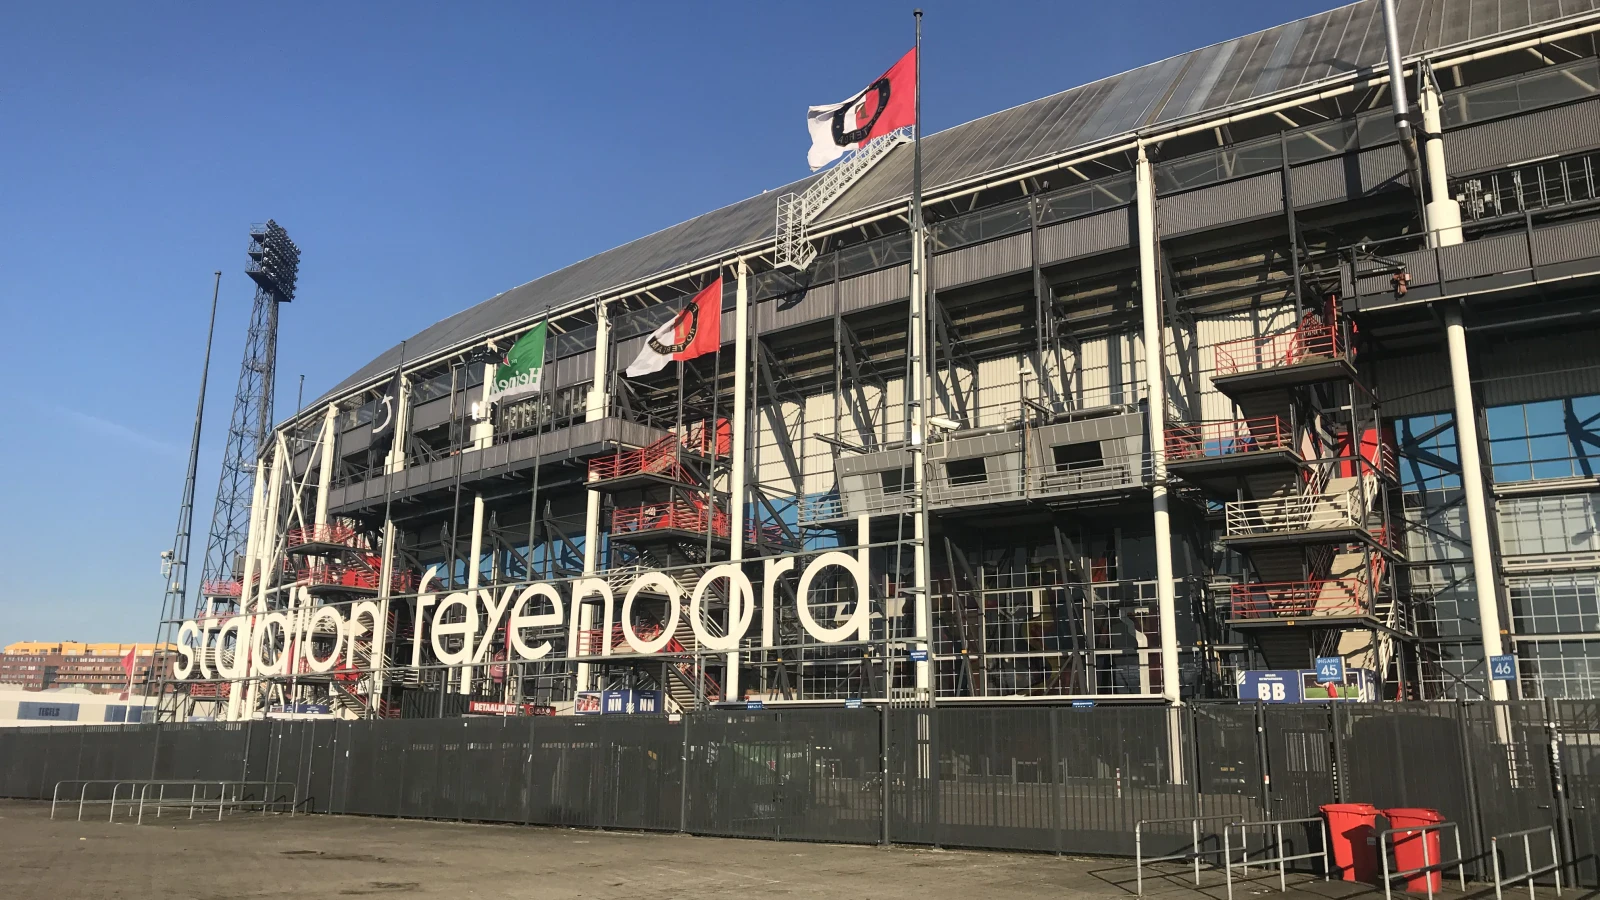 Feyenoord moet oppassen: 'Ze willen wel geld zien en krijgen'